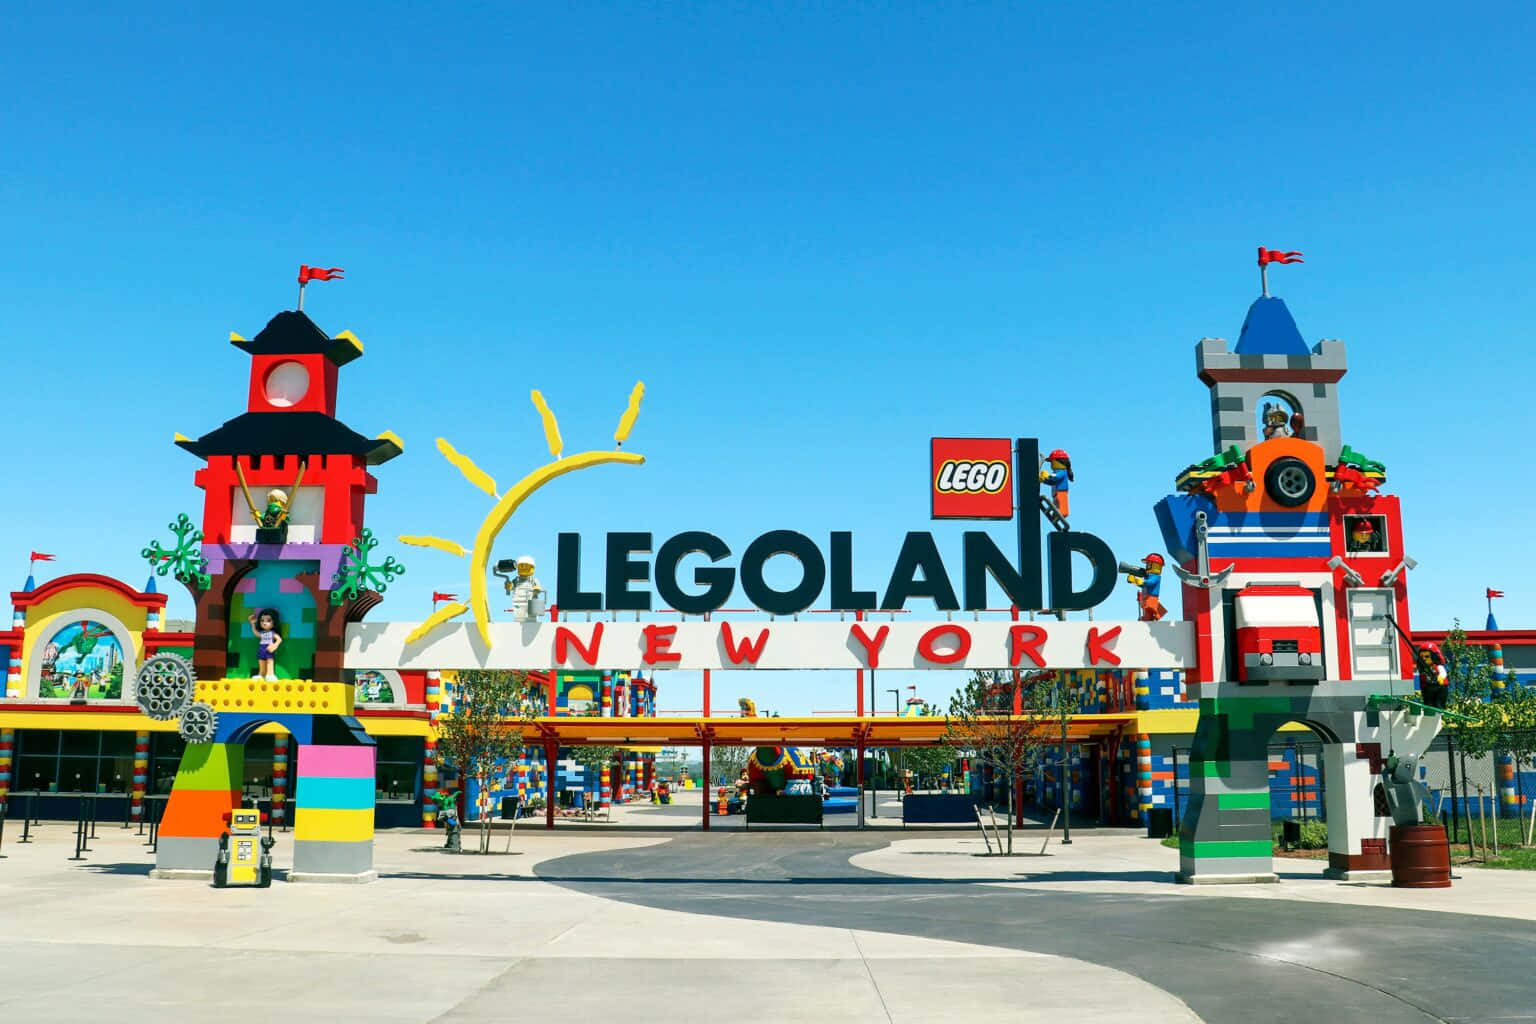 Legoland New York - A Legoland New York